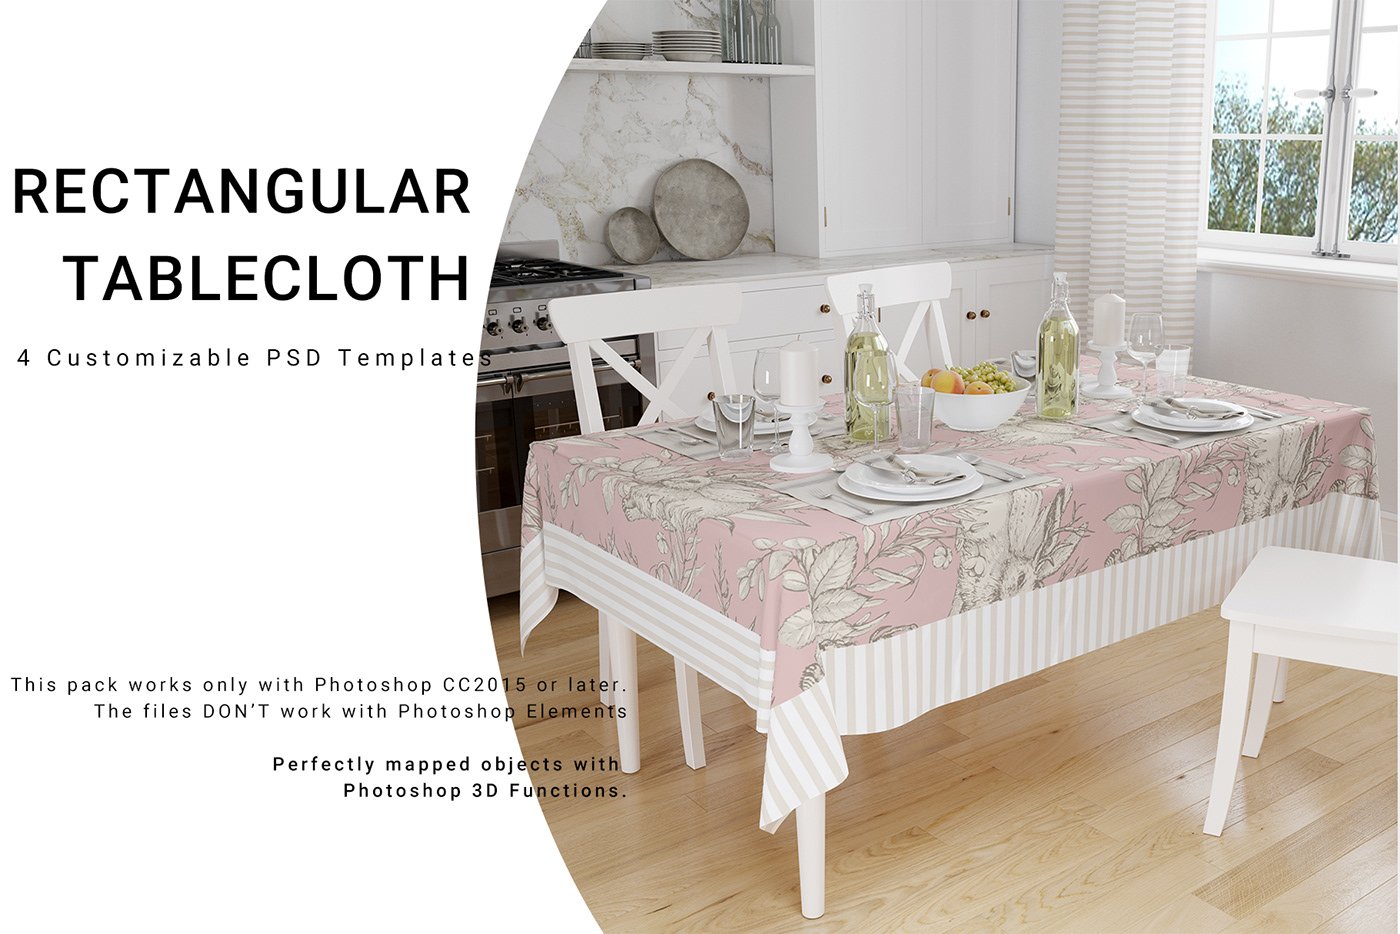 kitchen tablecloth kitchen textile mock mock-ups Mockup mockups ROUND TABLECLOTH Tablecloth tablecloth mock-up Tablecloth